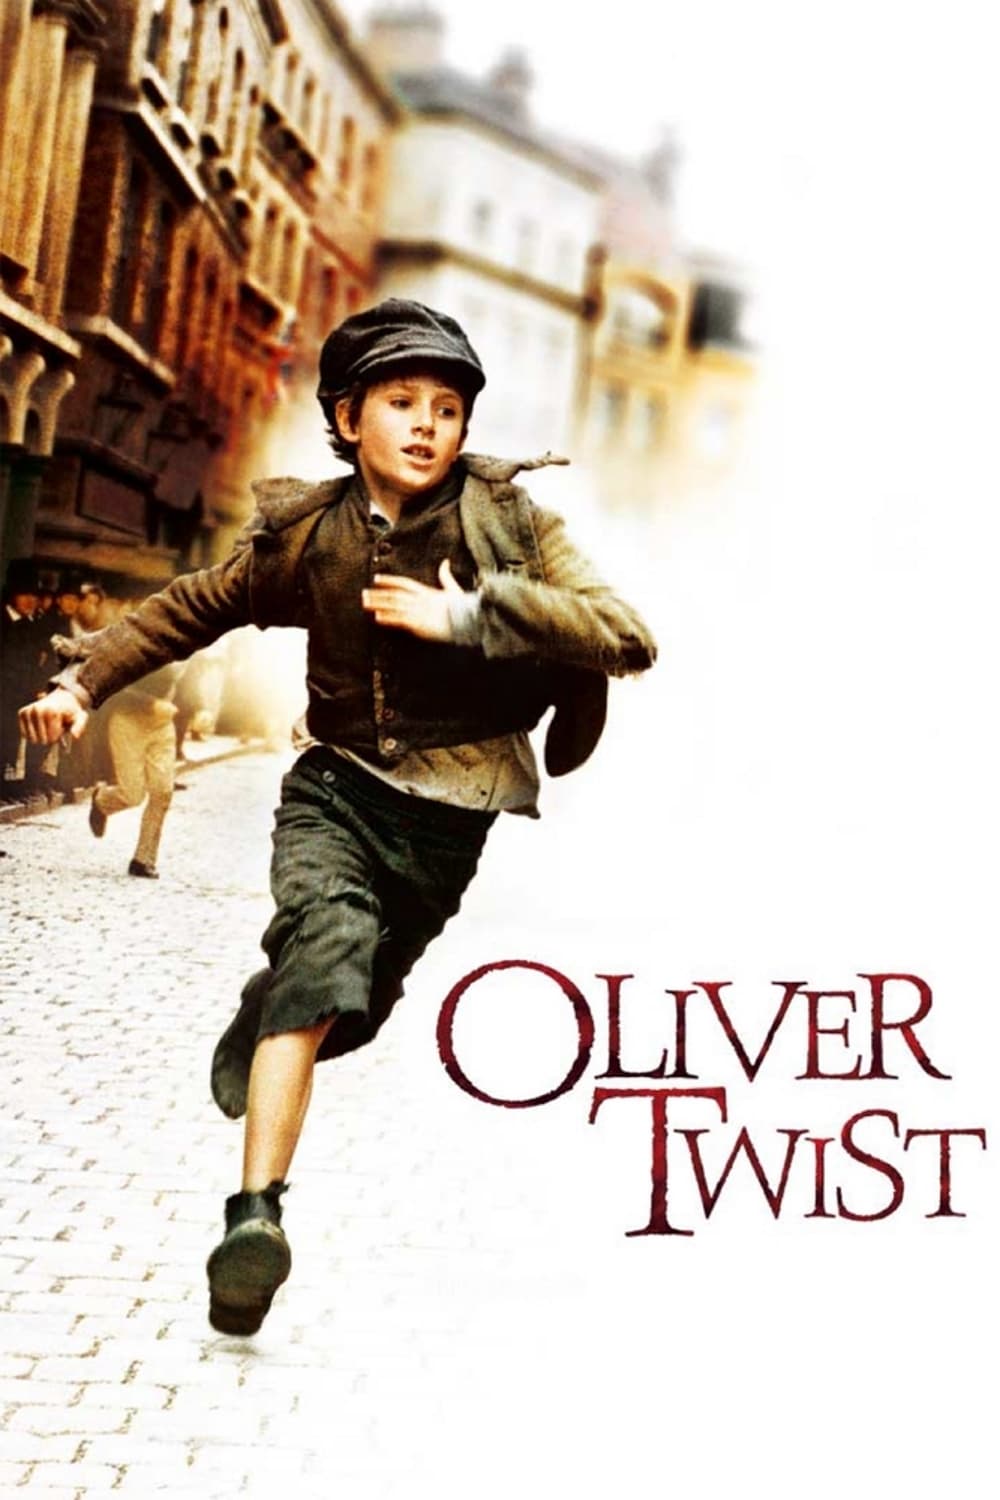 Plakat von "Oliver Twist"